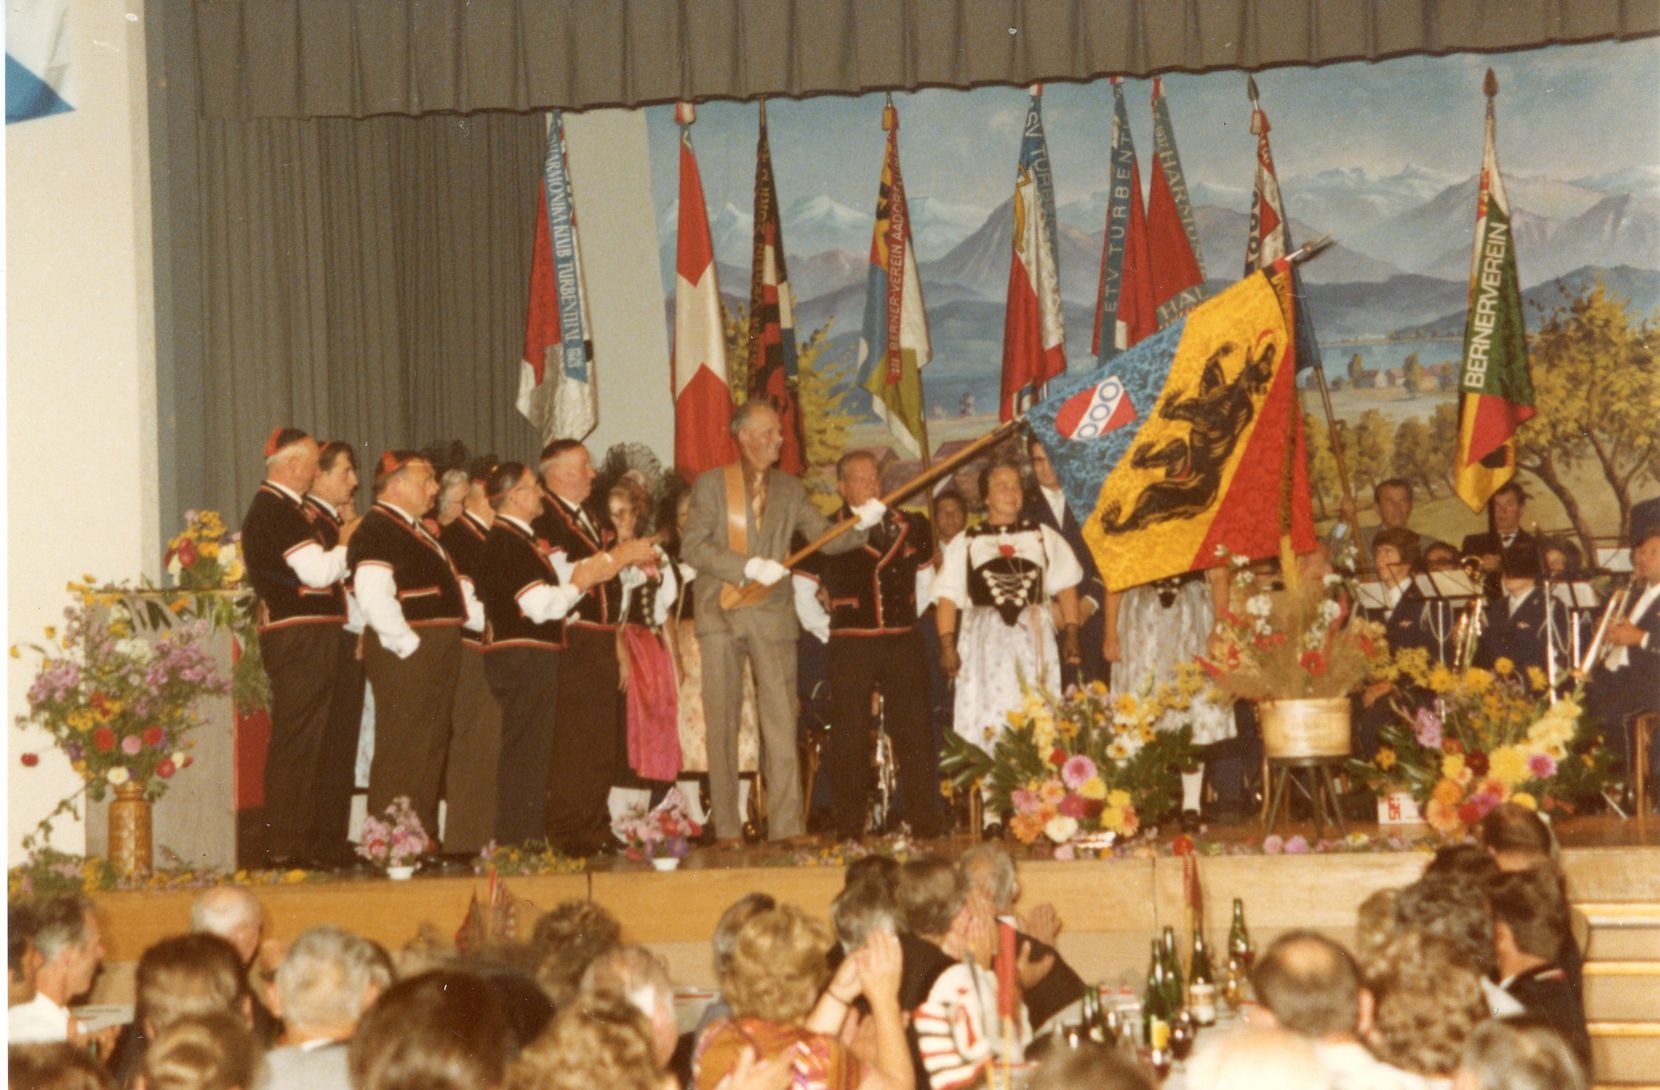 Man sieht eine Gruppe von Menschen in der Tracht auf einer Bühne stehen. Ein Mann schwenkt eine Fahne.